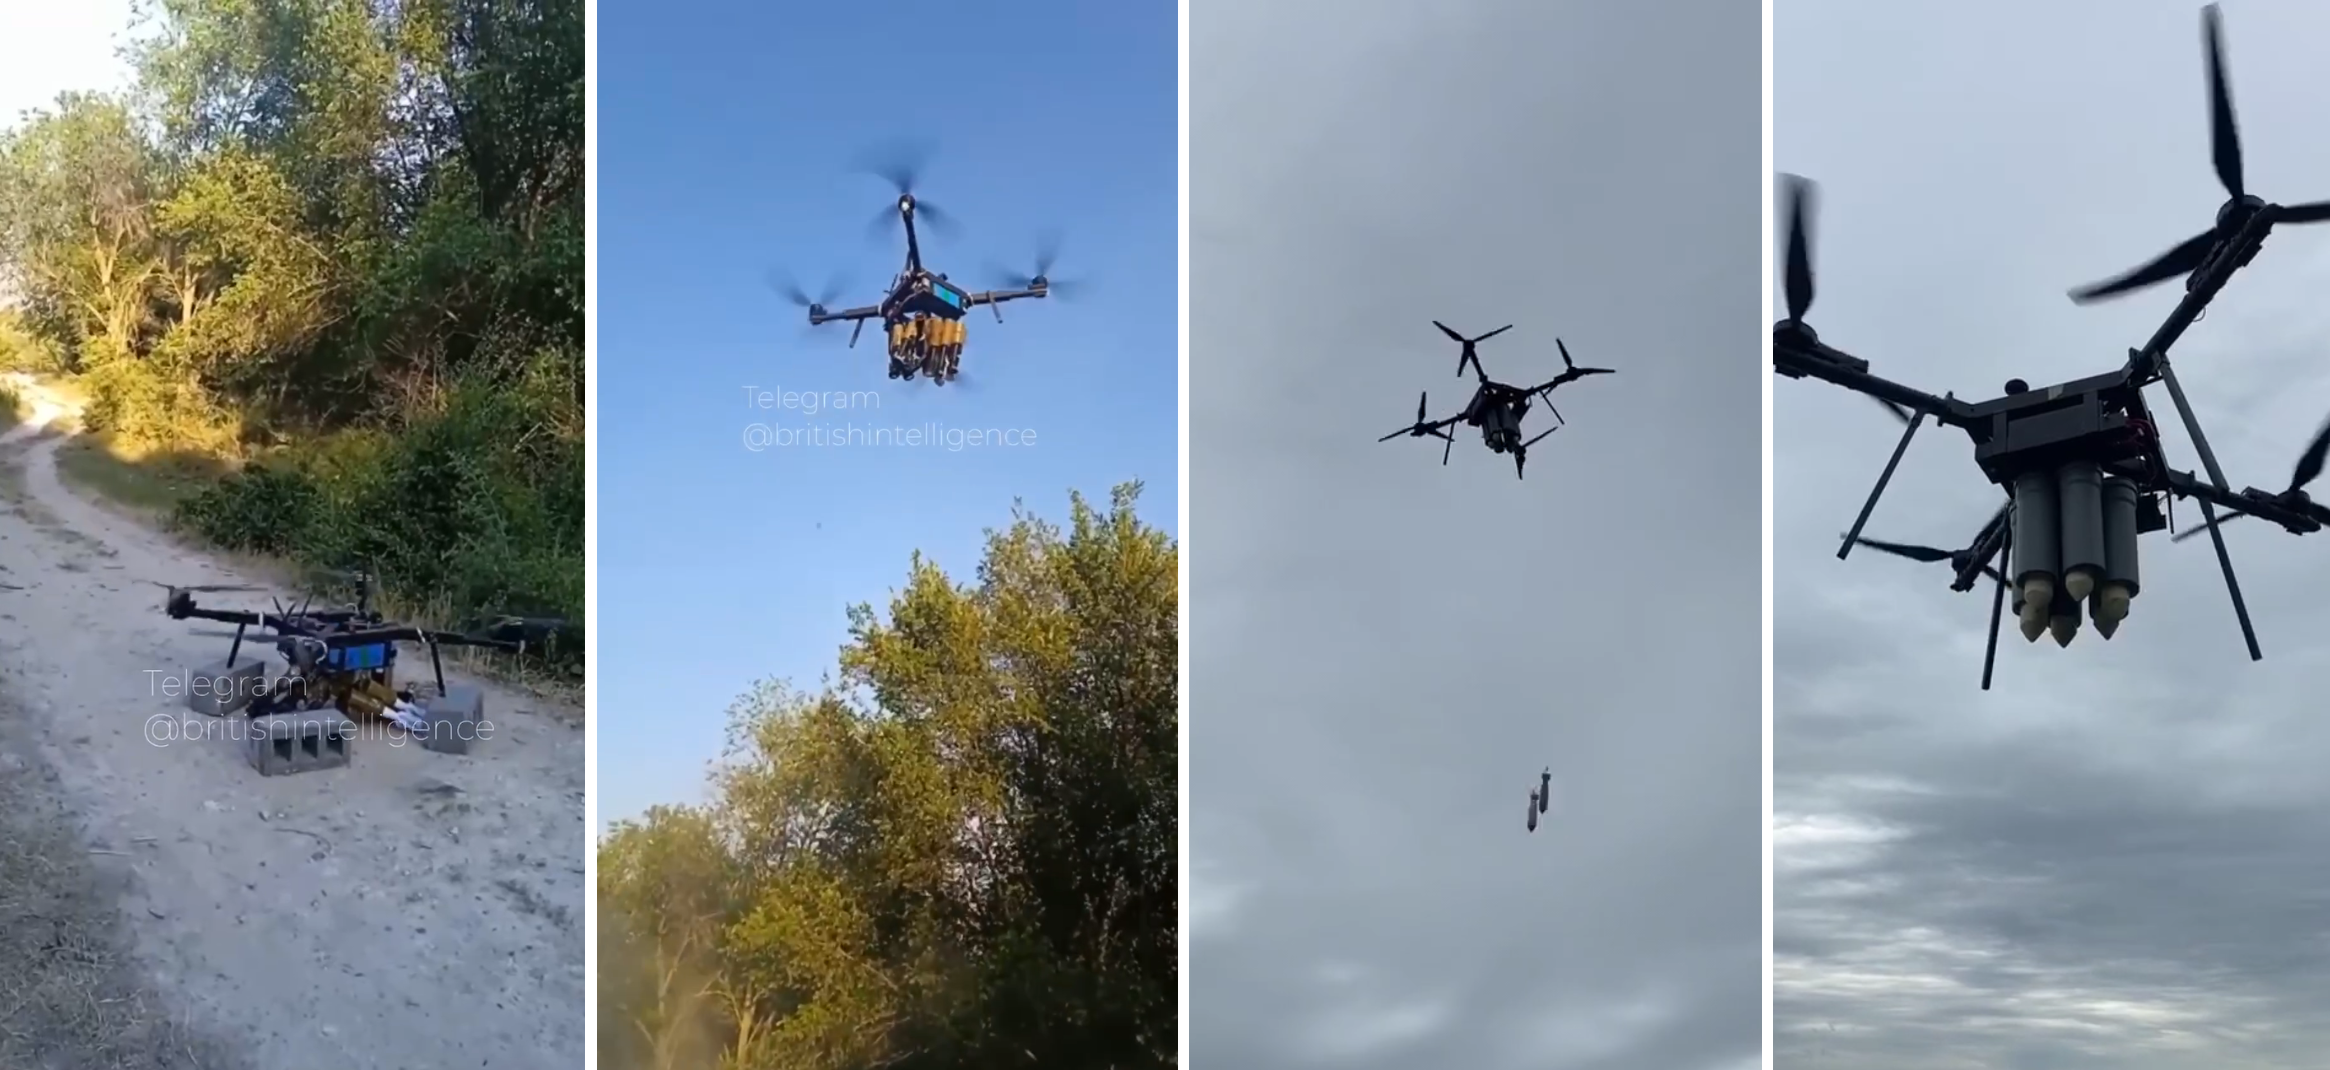 Die ukrainischen Streitkräfte zeigten zwei Drohnen, die viel Munition tragen können